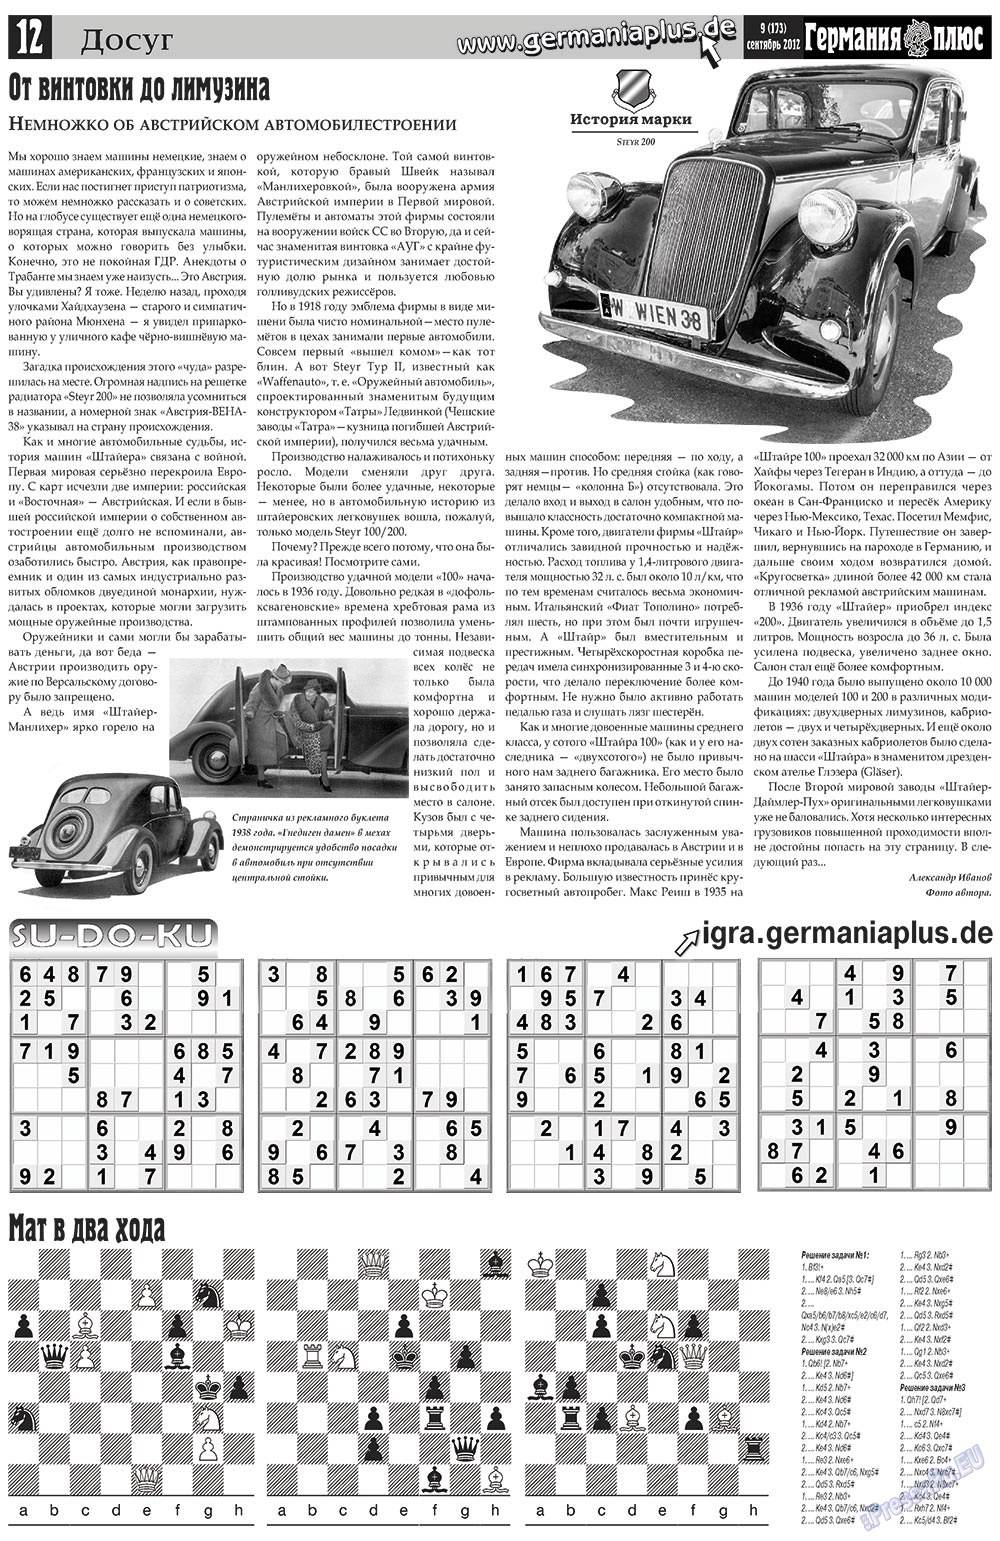 Германия плюс, газета. 2012 №9 стр.12